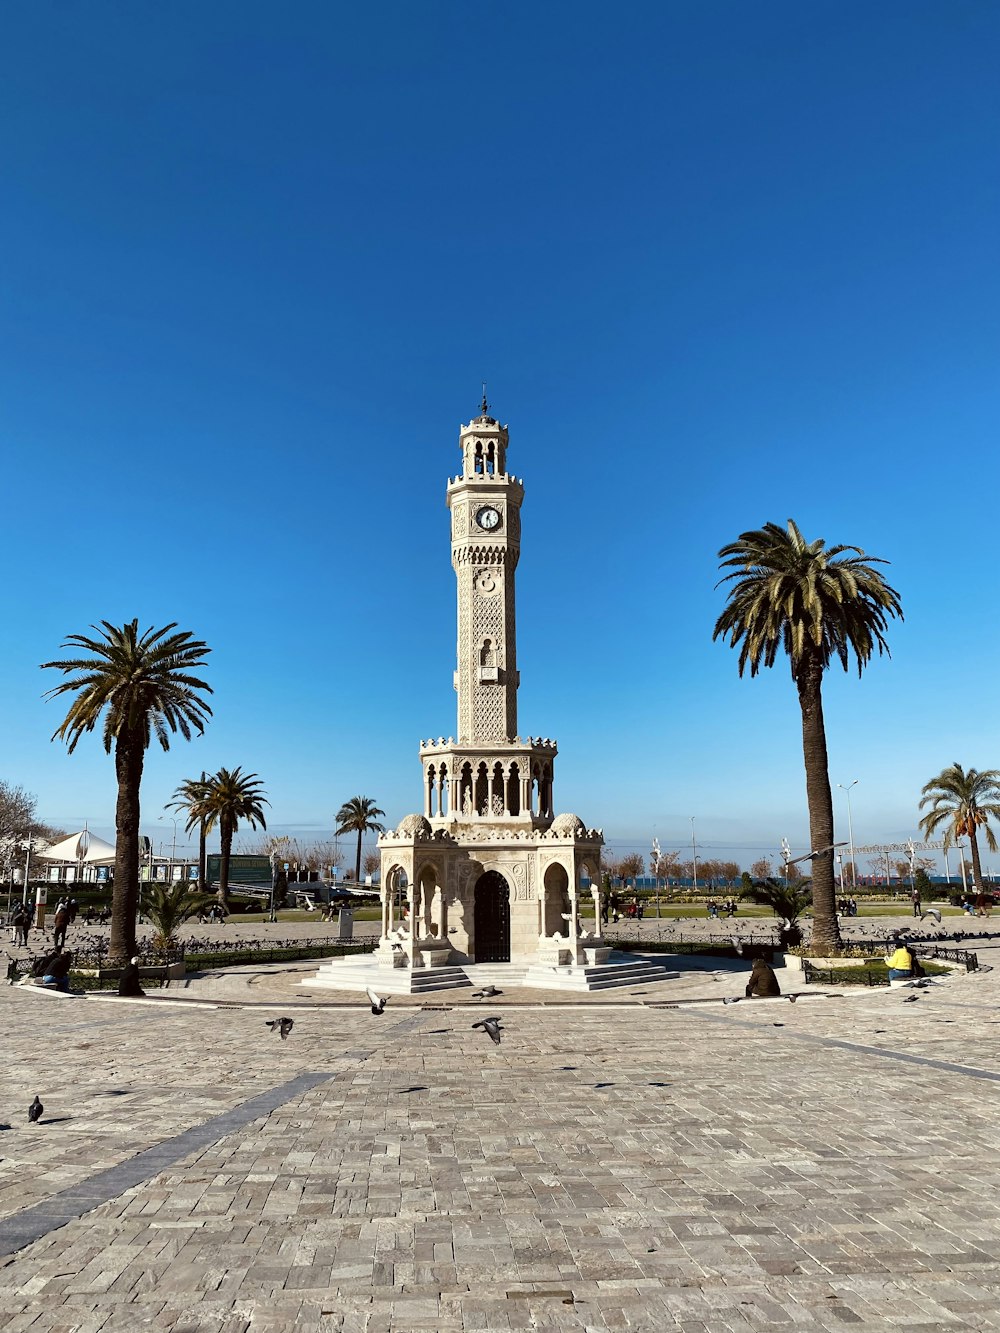 Una torre dell'orologio in una piazza con palme